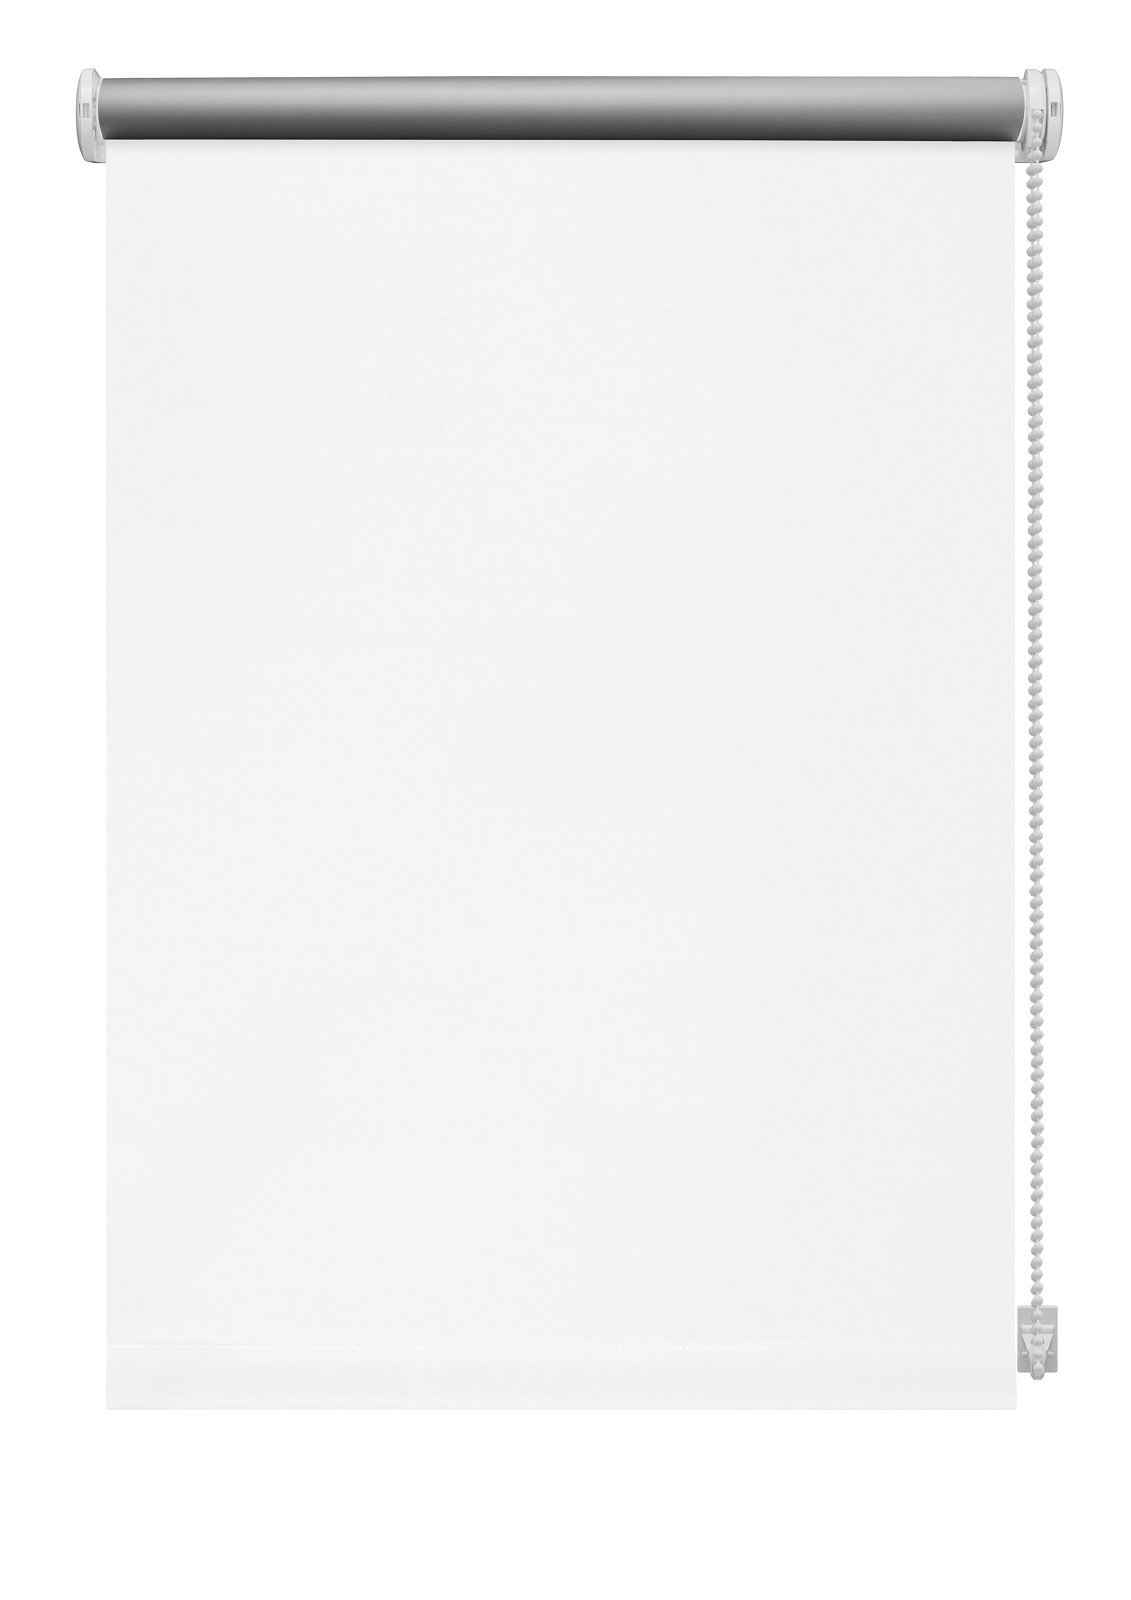 Klasikinė ritininė užuolaida THERMO 905, baltos sp., 90 x 230 cm - 2